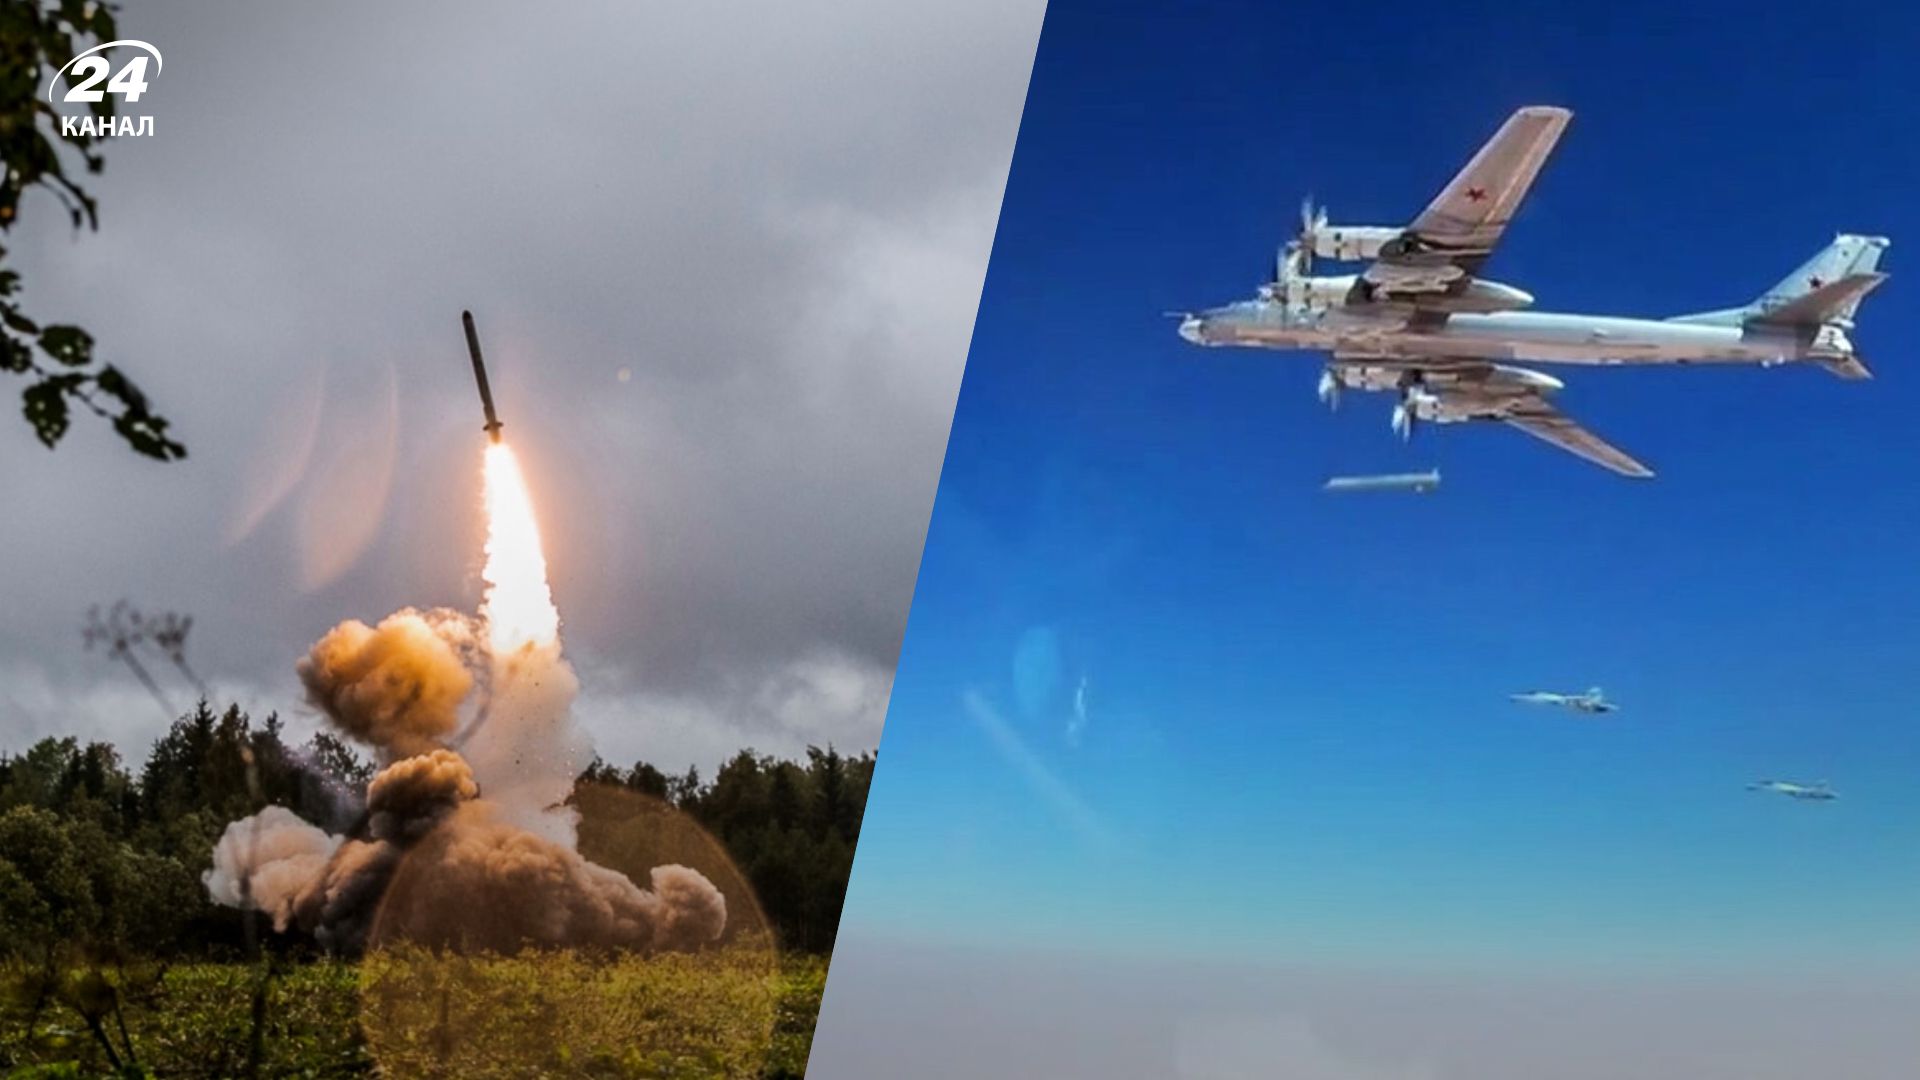 Потери врага 06.09.2022 - Воздушные силы сбили 5 крылатых ракет и Ка-52 - 24 Канал